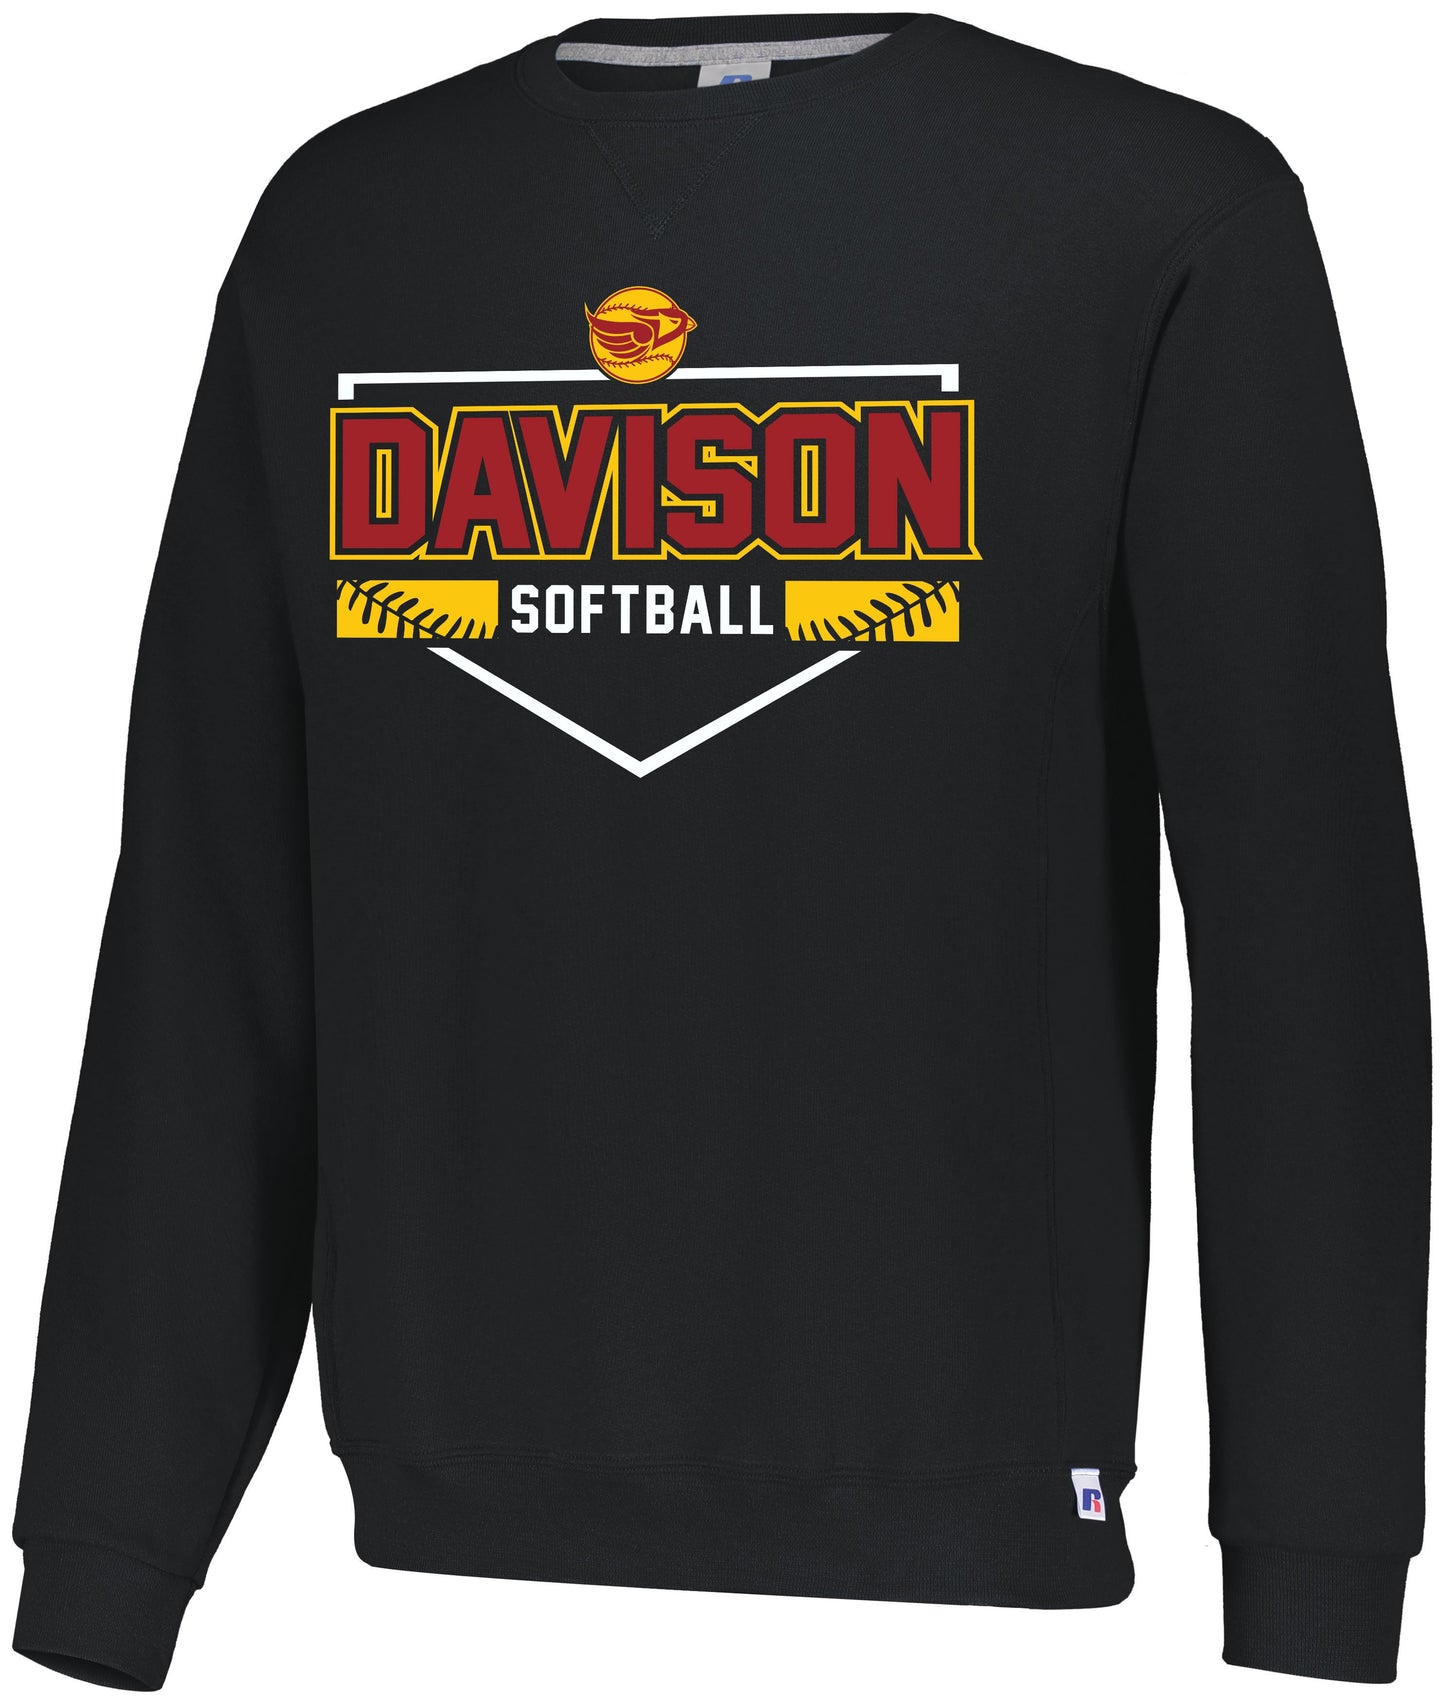 Davison Softball Dri-Power Crew Sweatshirt